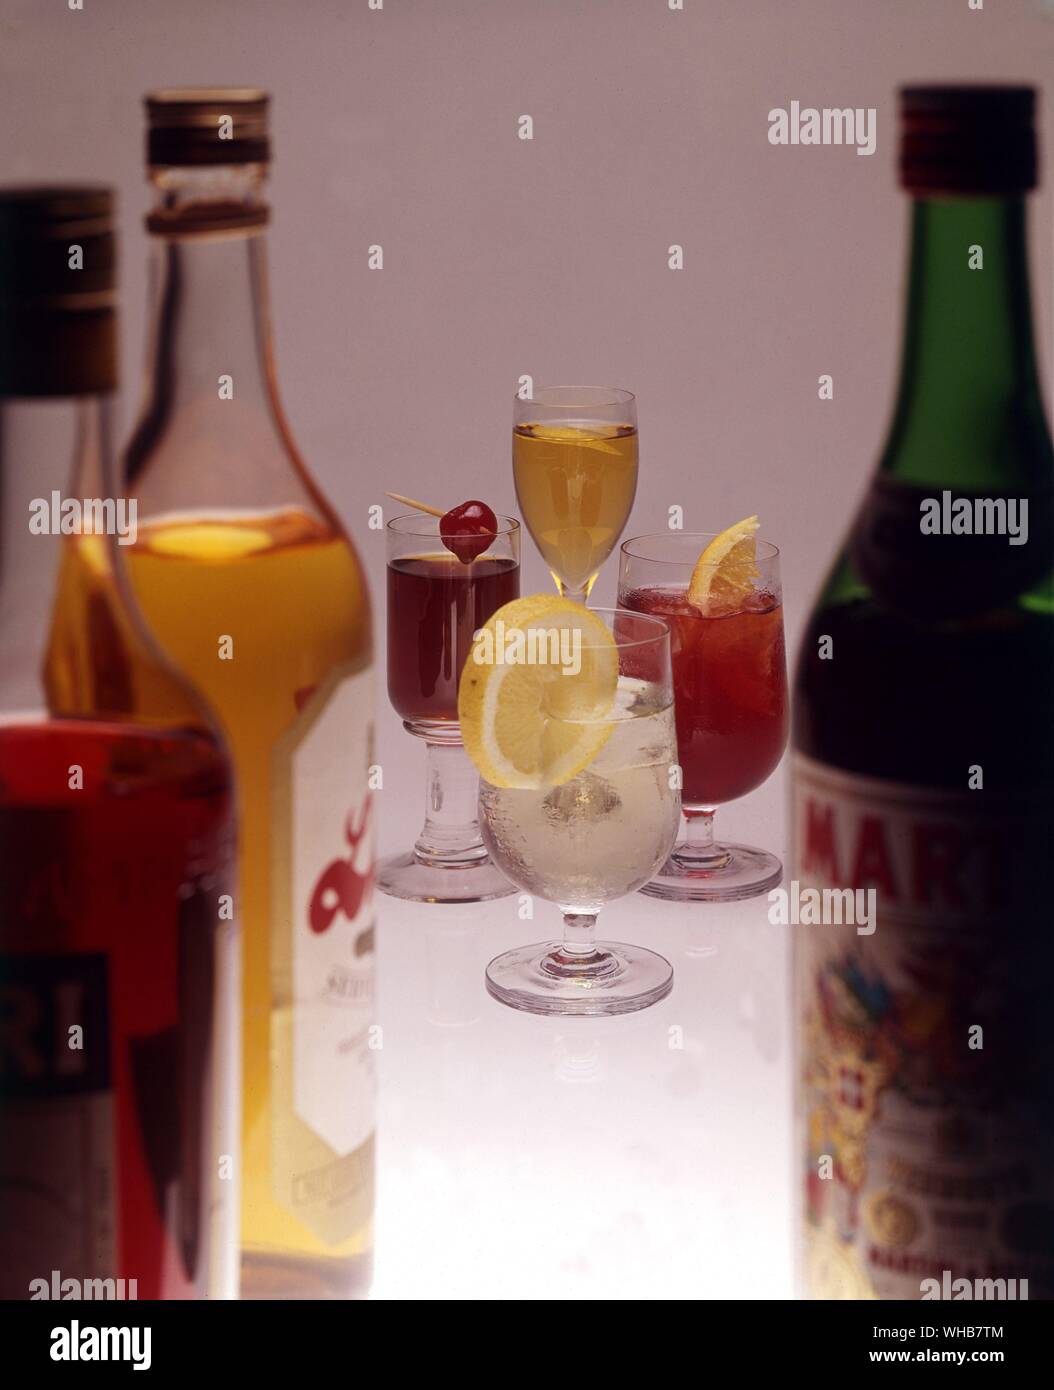 Les boissons alcoolisées dans les verres avec des bouteilles dans l'avant-garde. Banque D'Images